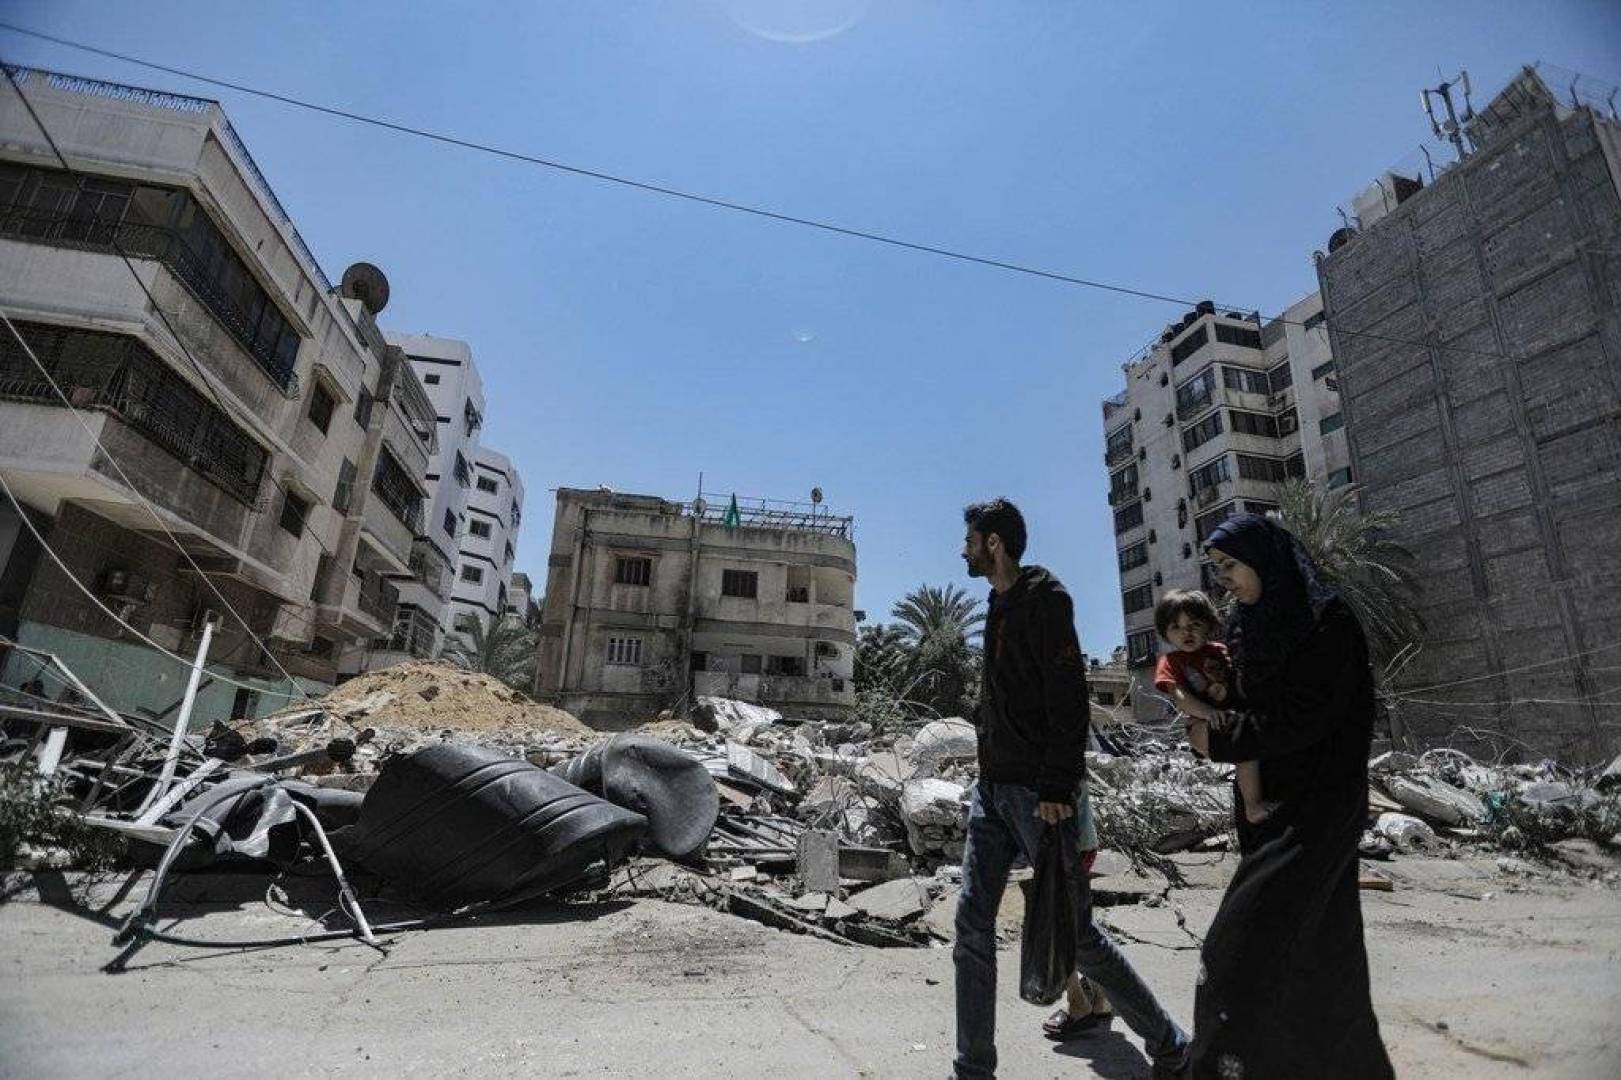 رويترز: جولة مباحثات التهدئة في غزة قد تستغرق أسبوعين